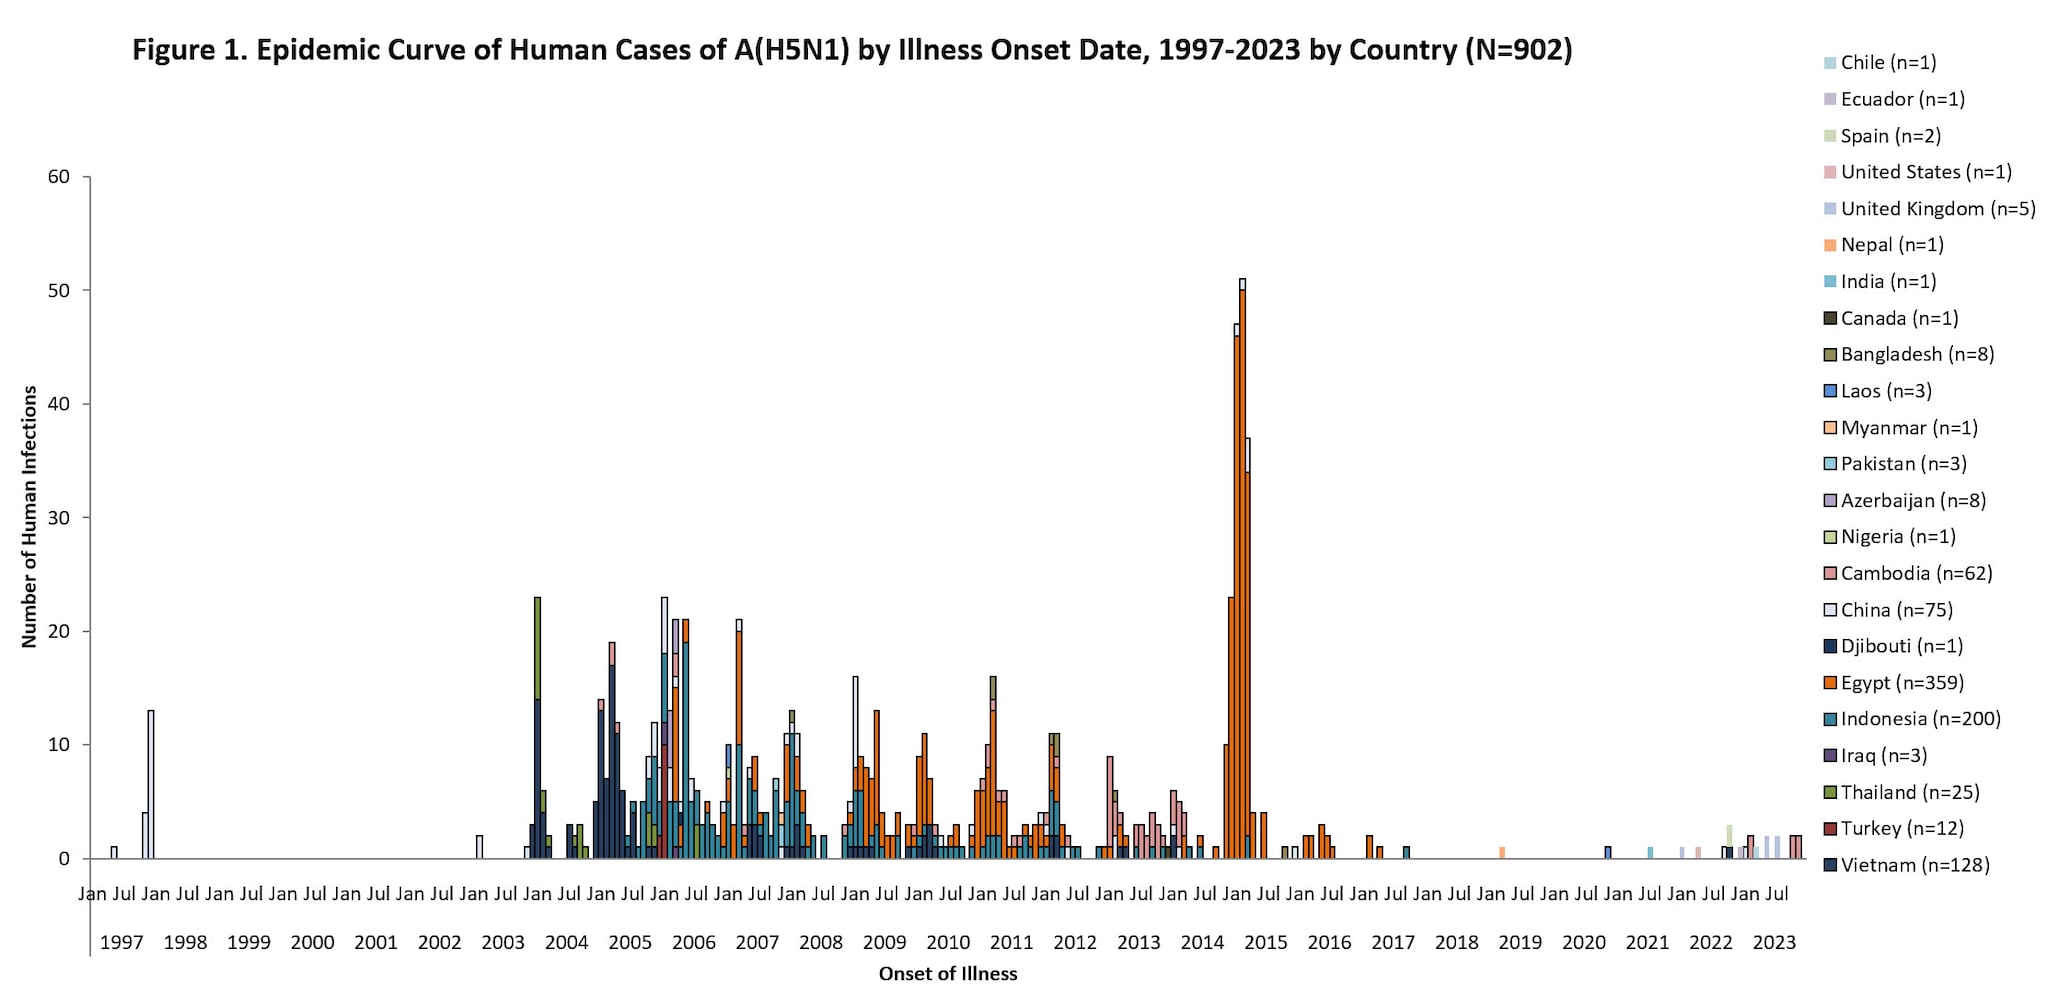 gráfico de la curva epidémica con el texto Figura 1. Curva epidémica de casos en seres humanos de A(H5N1) por fecha de aparición de la enfermedad, 1997-2023, por condado (N=900)